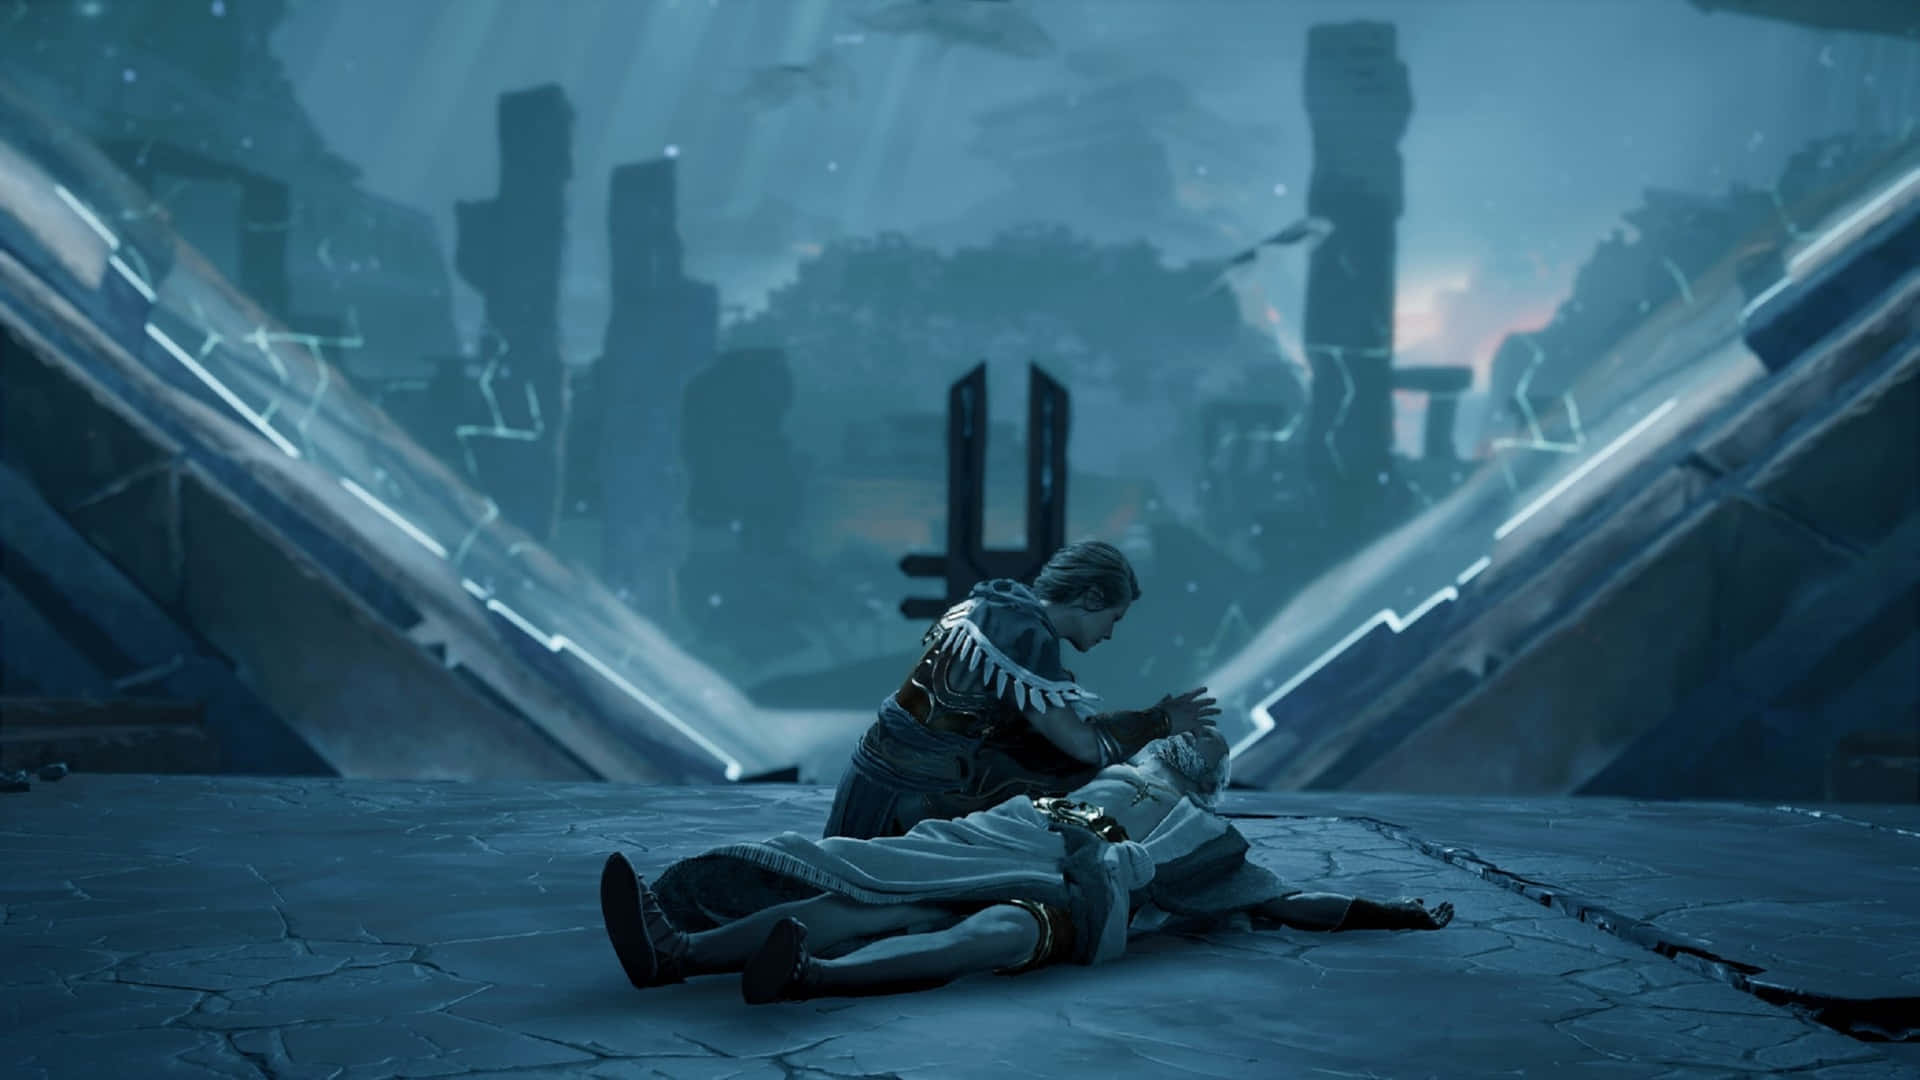 1920x1080bakgrundsbild För Assassin's Creed Odyssey Blå